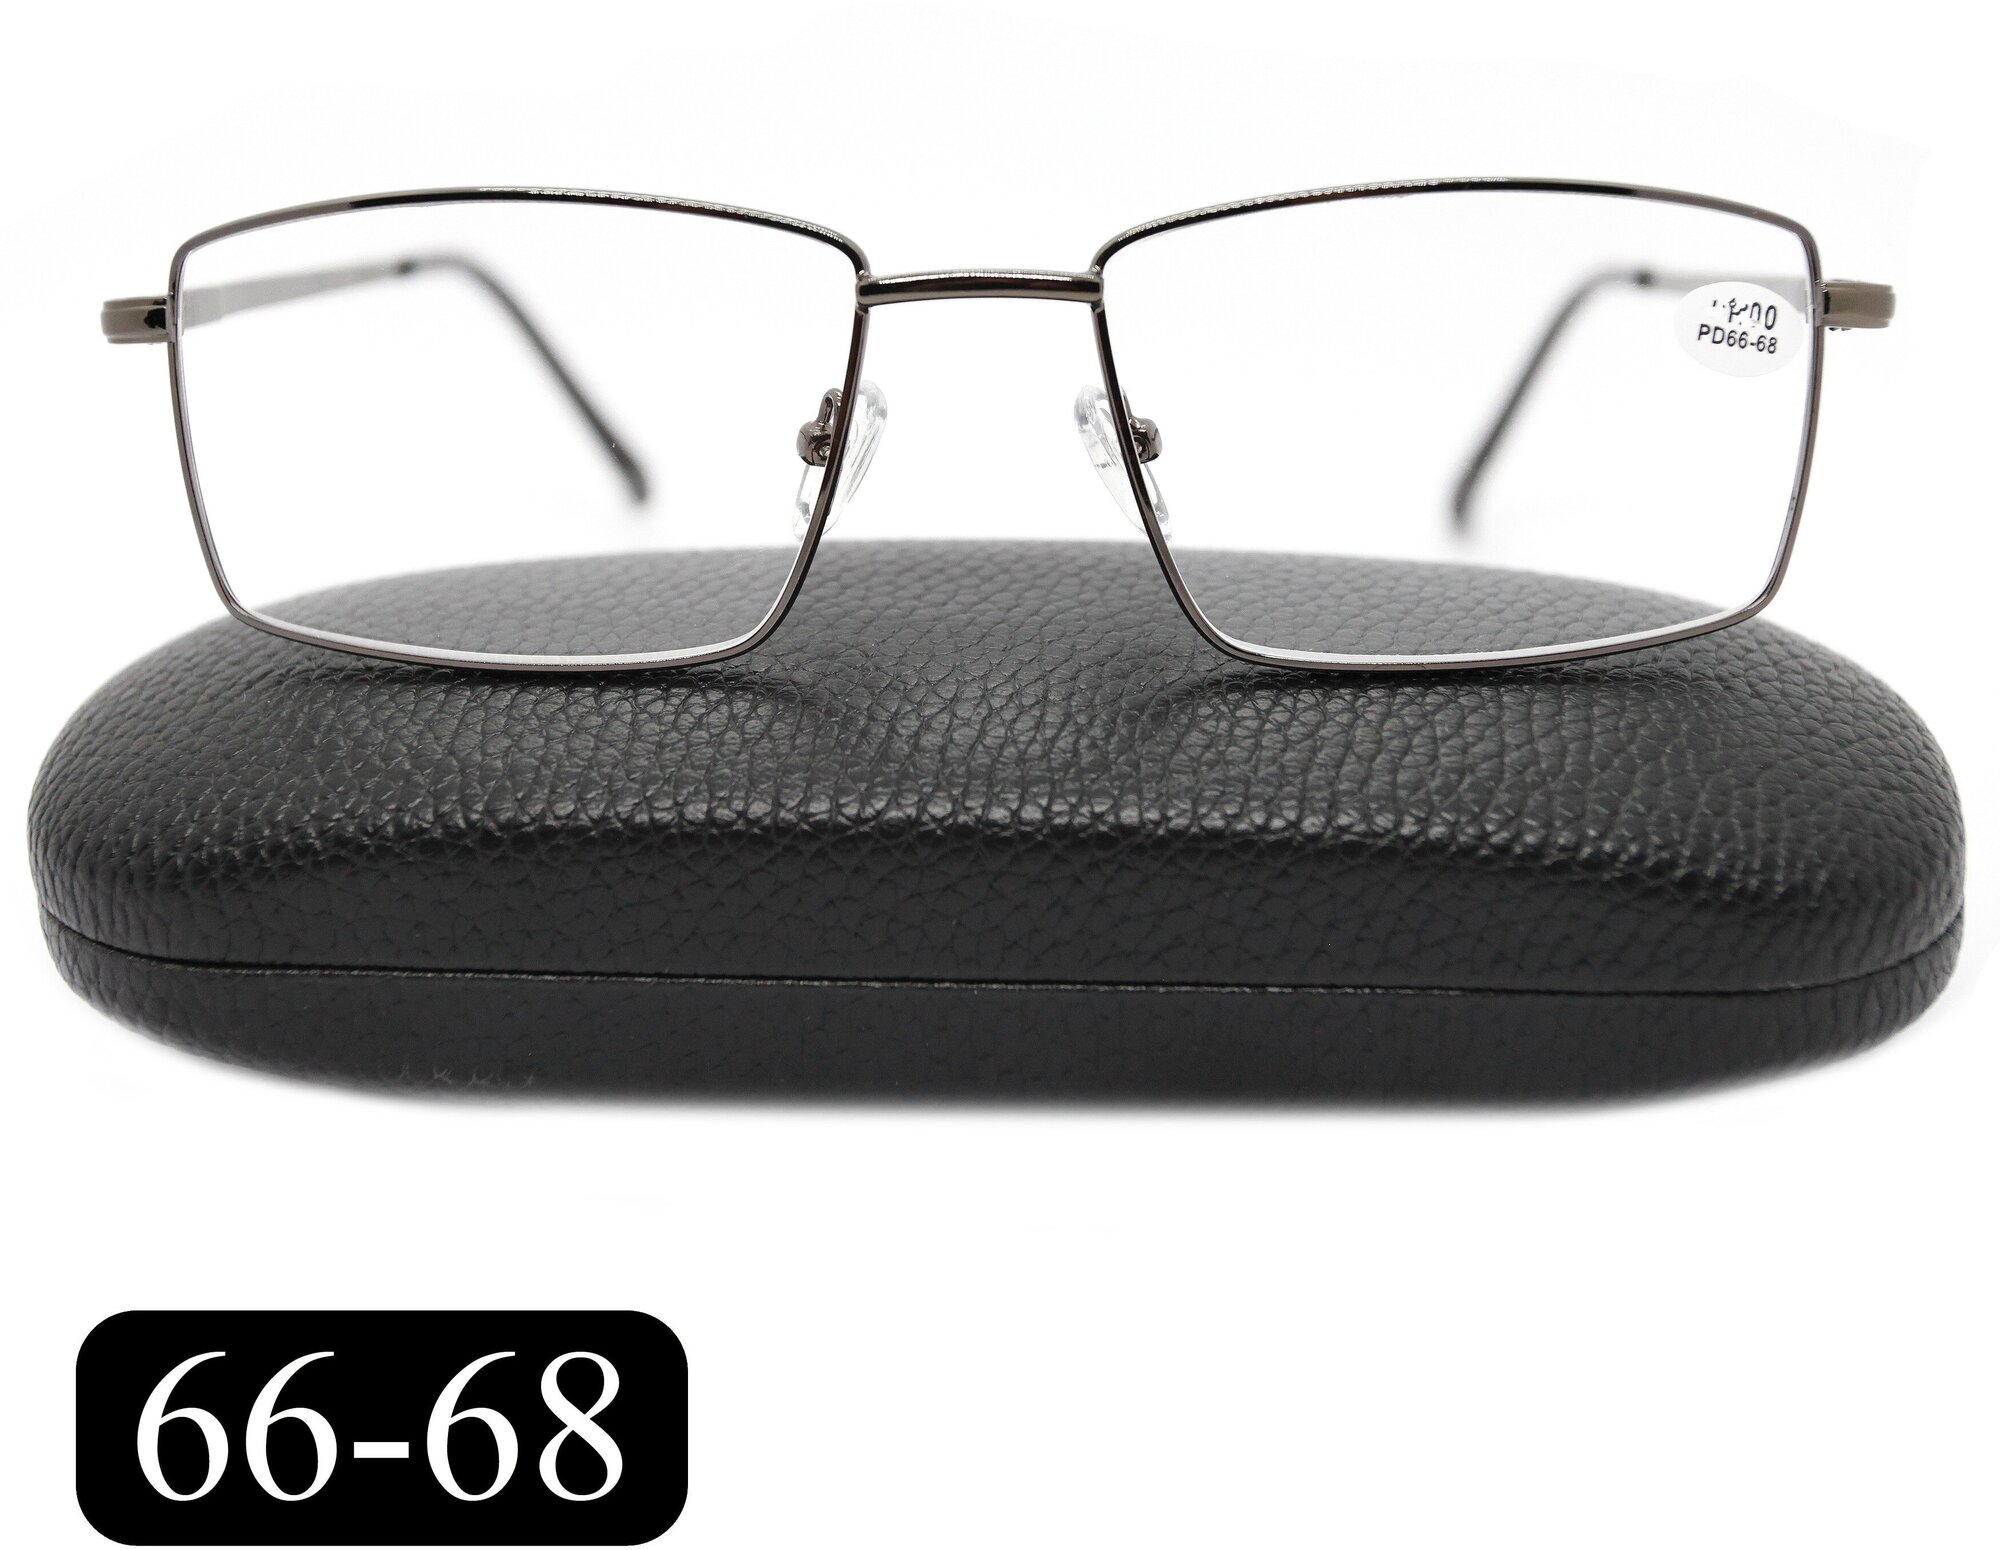 Очки для чтения 66-68 на широкое лицо (+1.00) MOCT 182 M2, с футляром, цвет серый, линзы пластик, РЦ 66-68